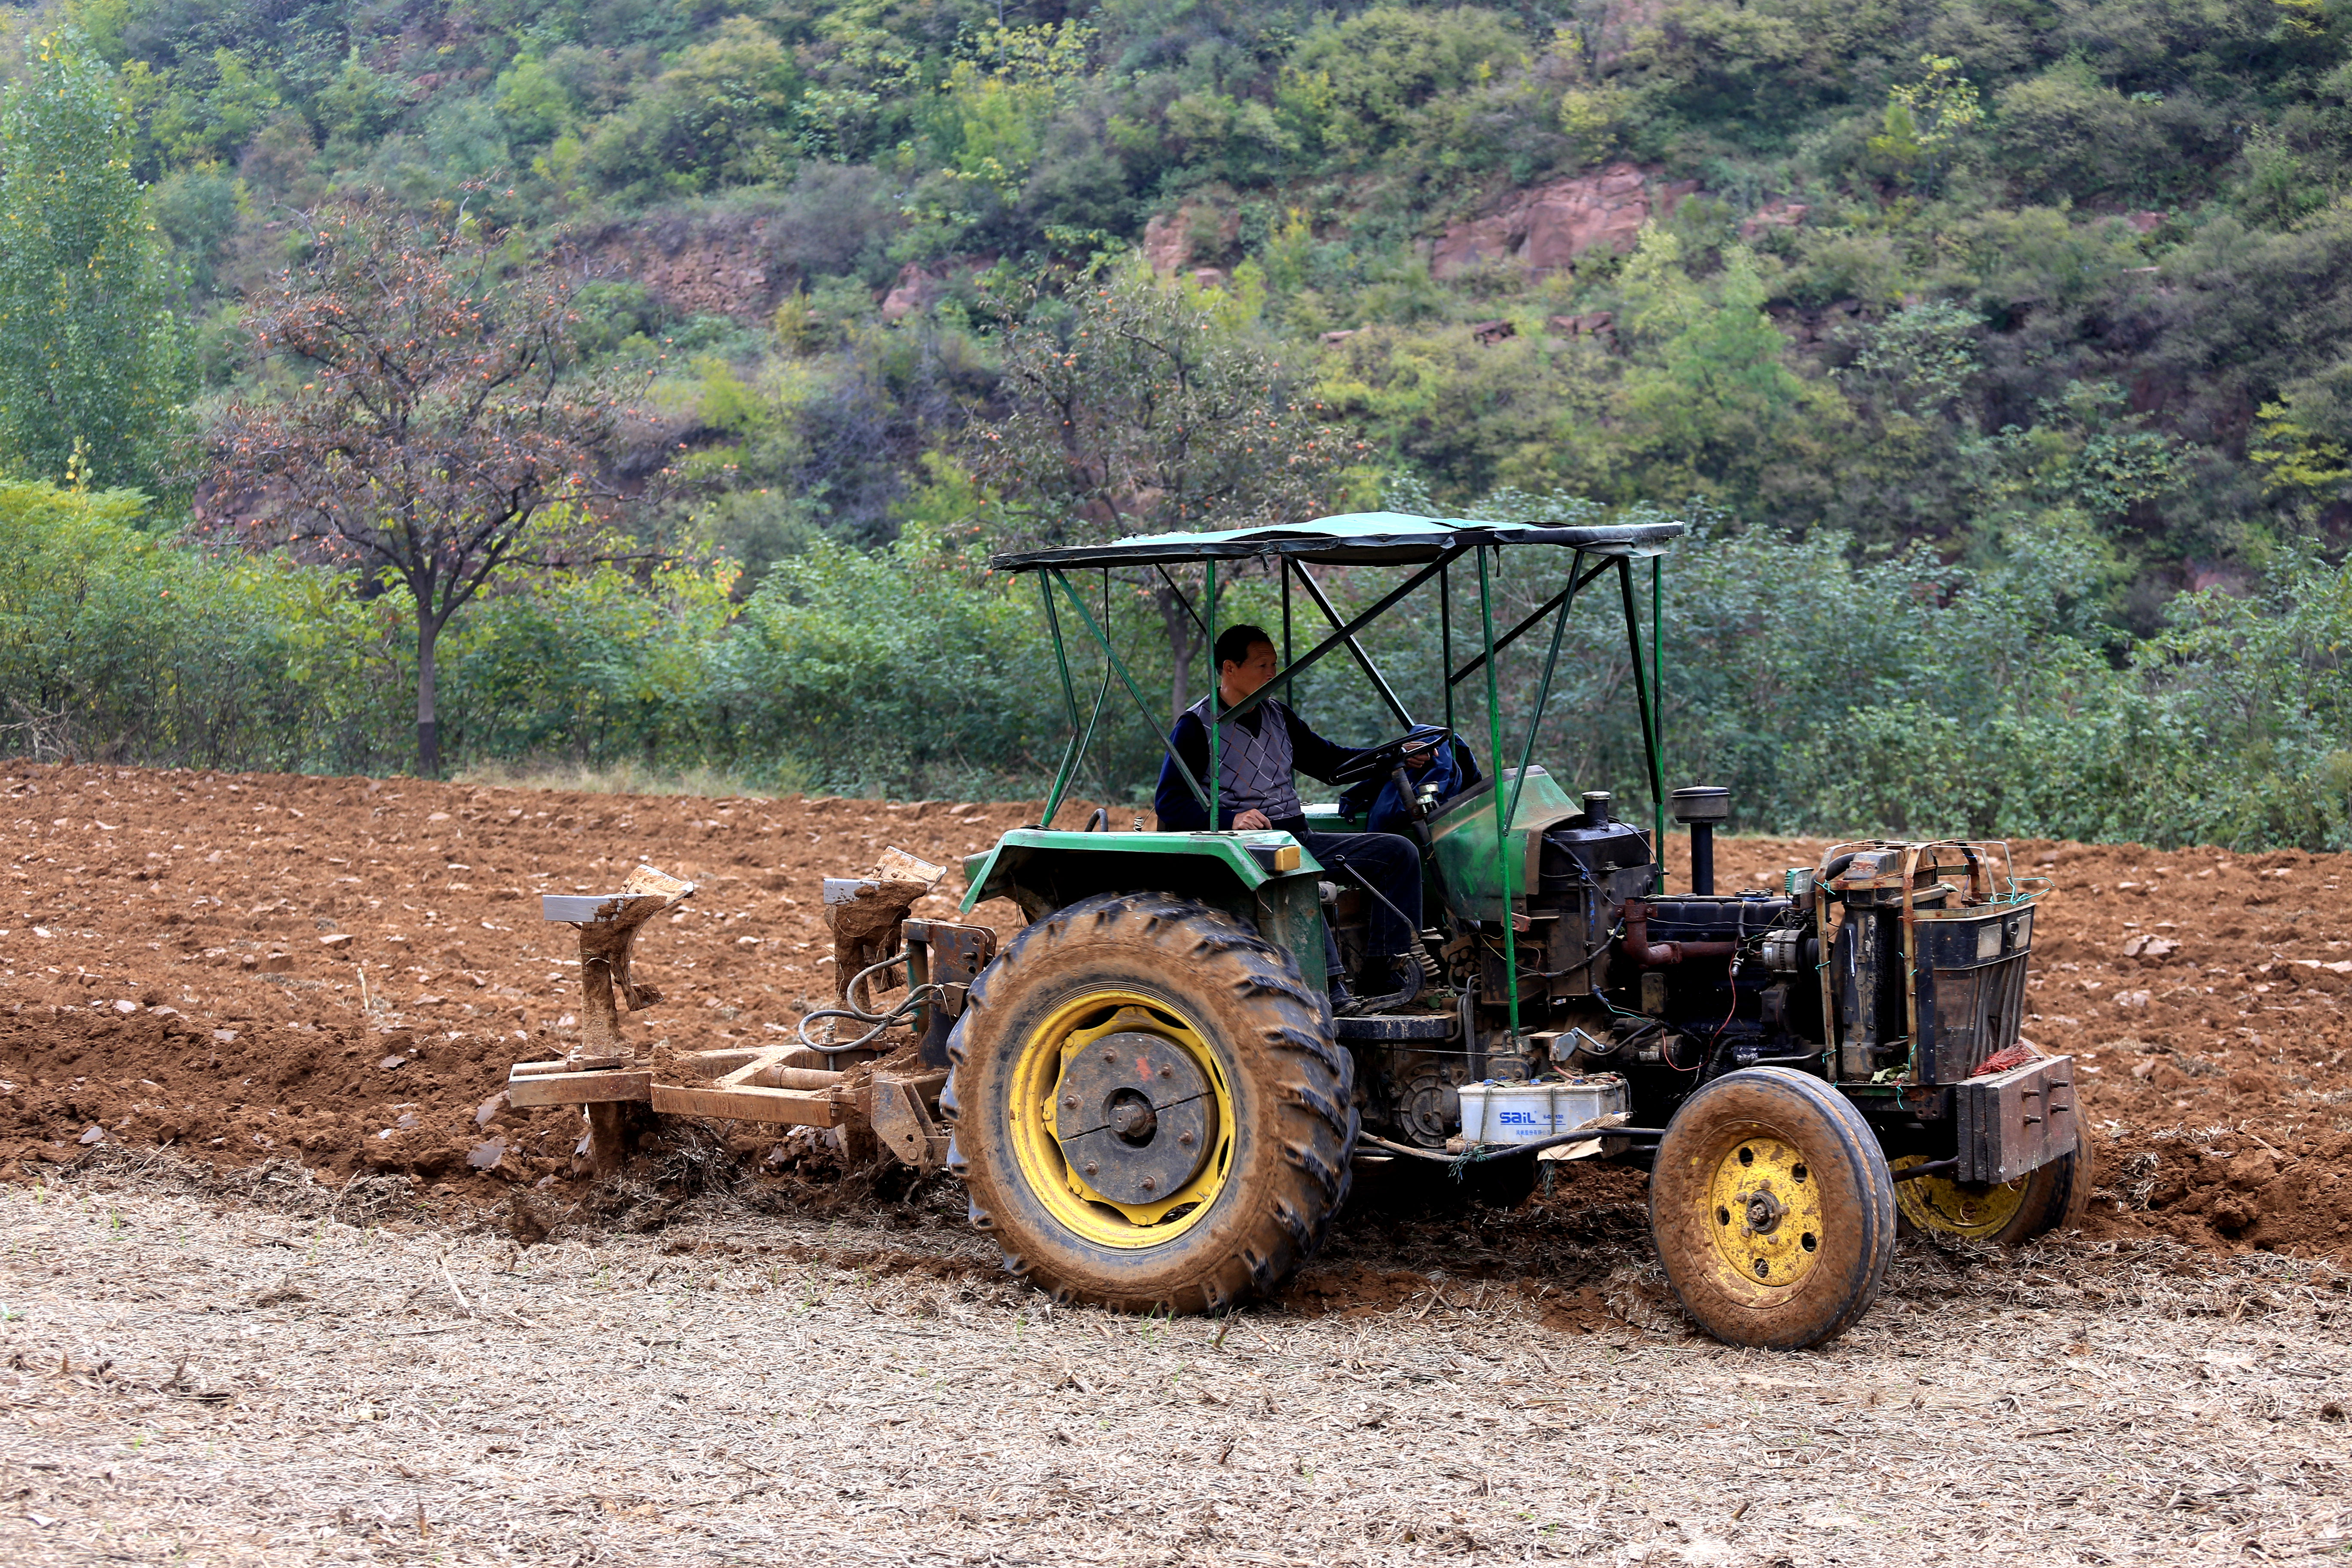 2017年10月23日,河南省荥阳市石板村农民用拖拉机翻耕土地,准备播种